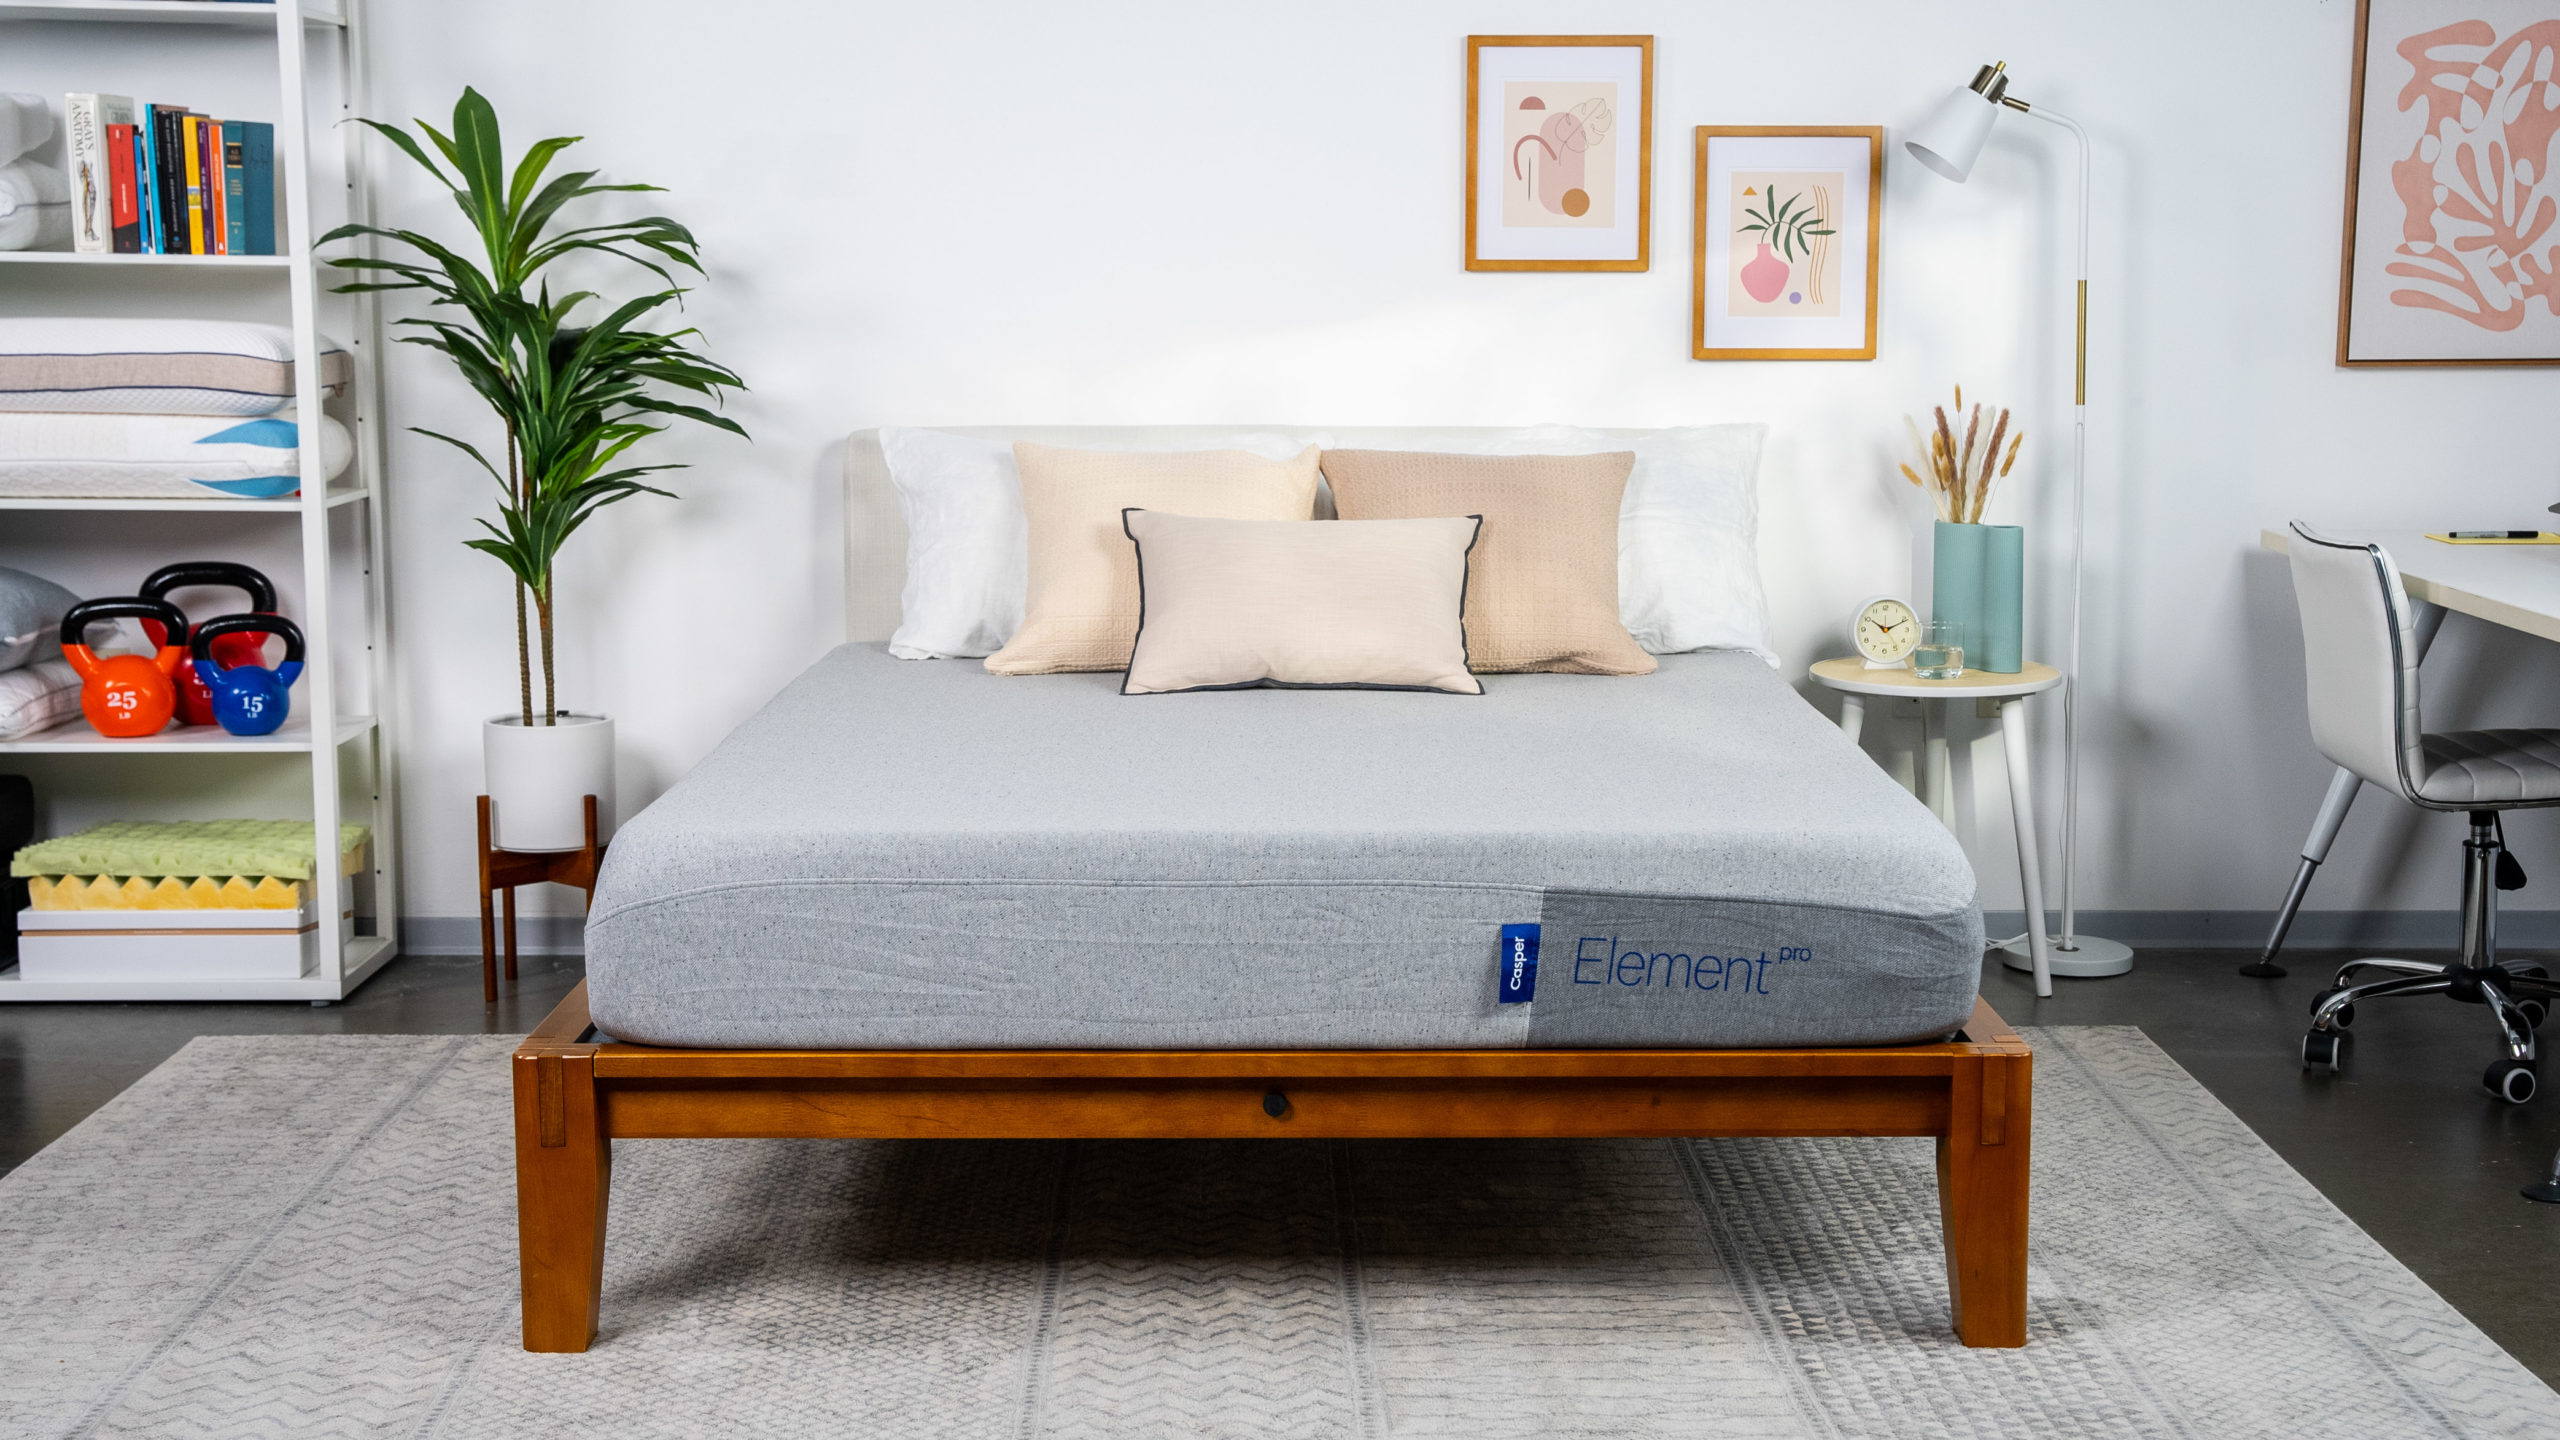 casper sleep element mattress